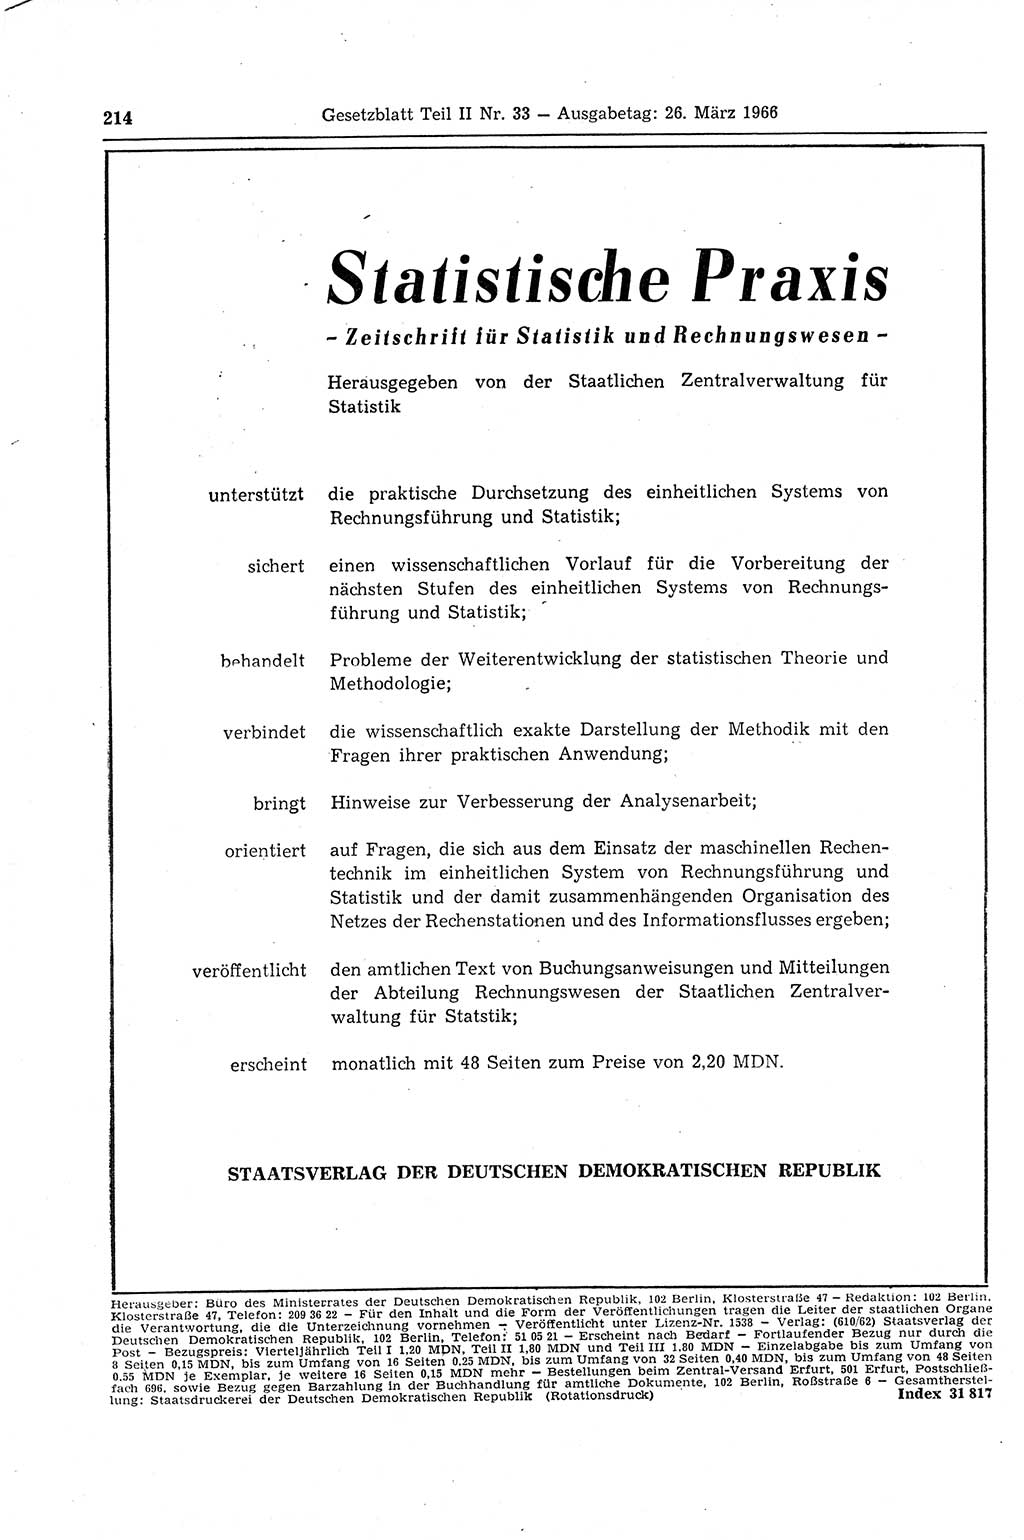 Gesetzblatt (GBl.) der Deutschen Demokratischen Republik (DDR) Teil ⅠⅠ 1966, Seite 214 (GBl. DDR ⅠⅠ 1966, S. 214)